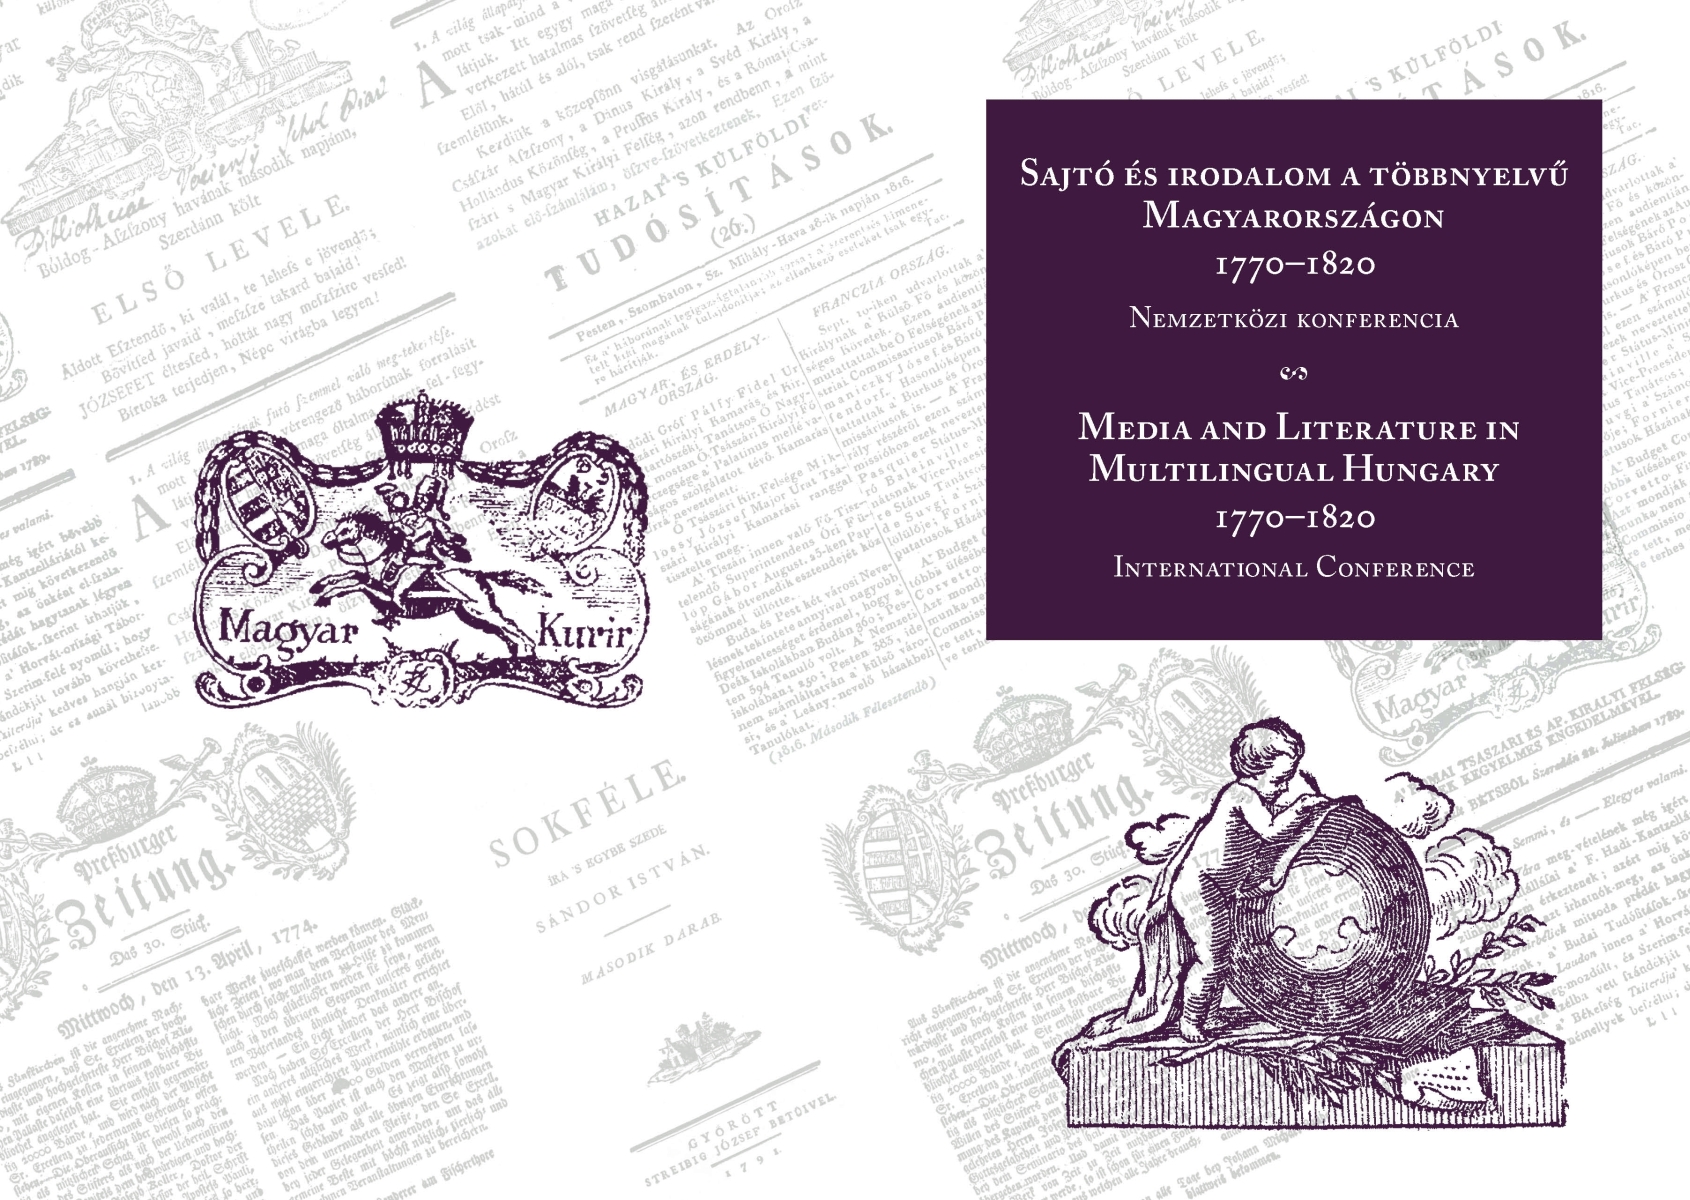 Sajtó és irodalom a többnyelvű Magyarországon (1770–1820) nemzetközi konferencia